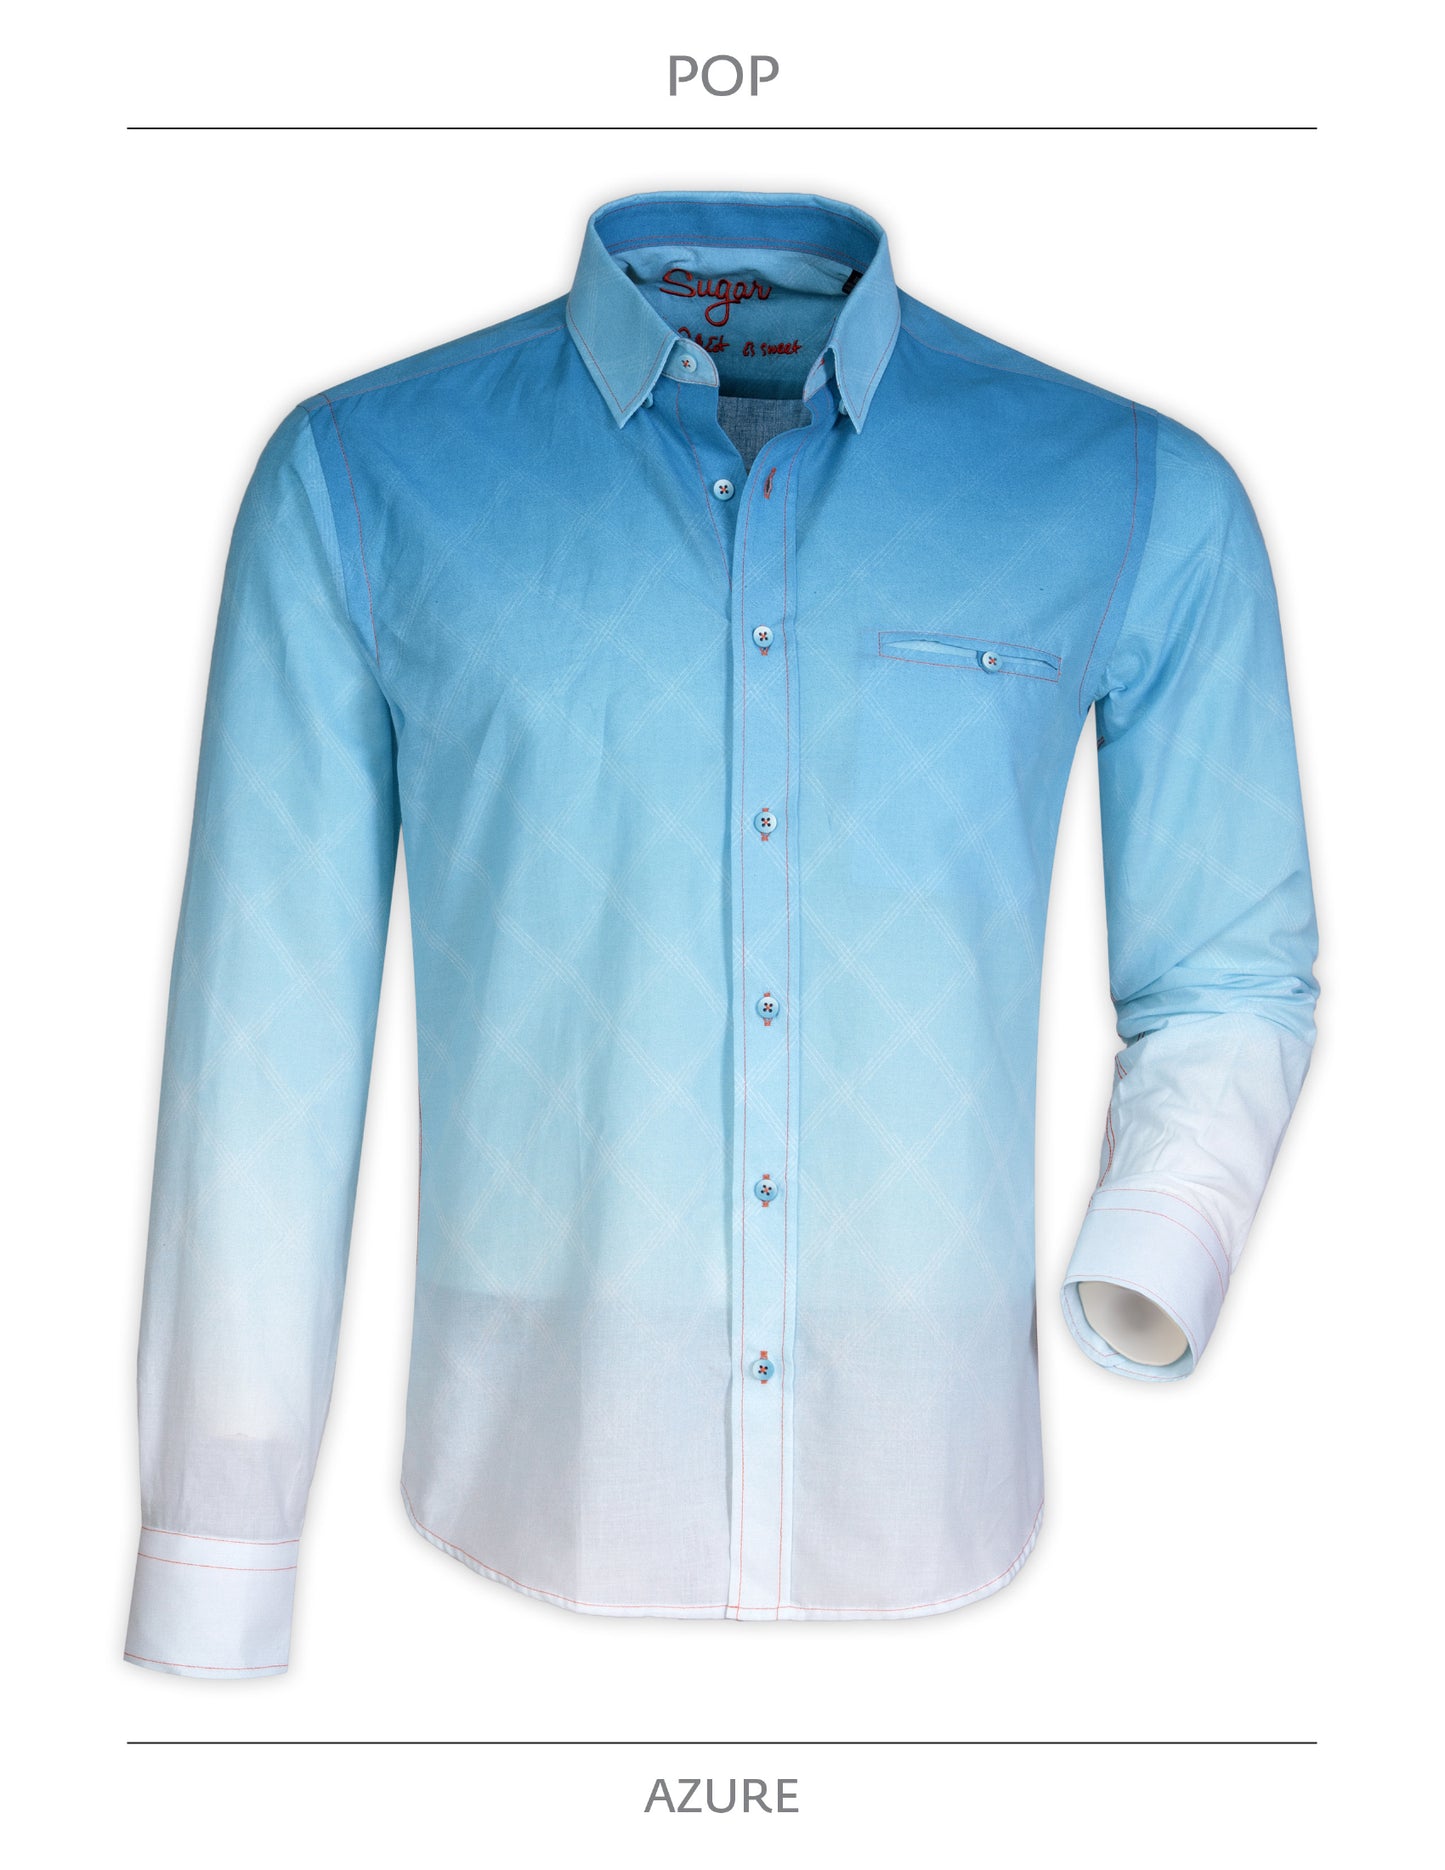 Pop Azure Sugar Long Sleeve Button Up Shirt